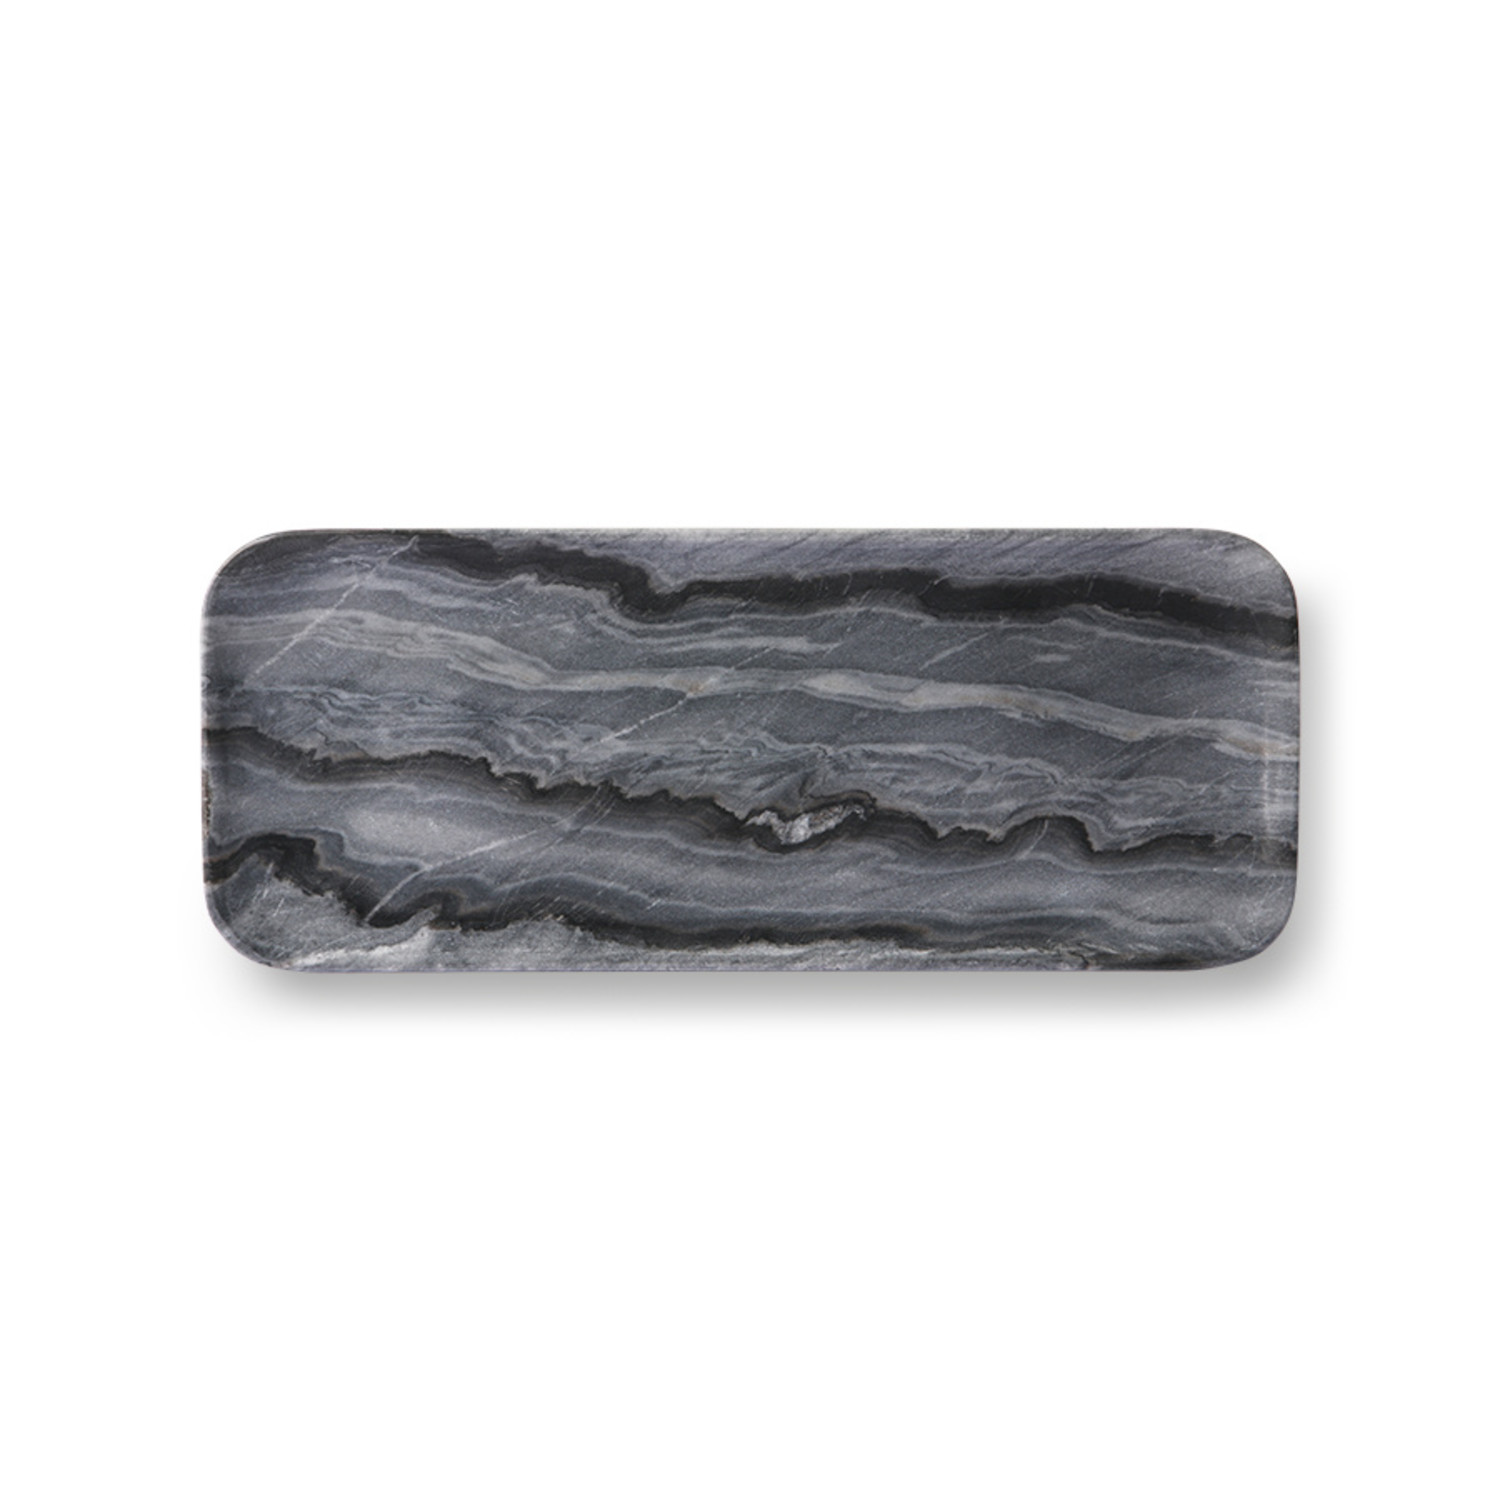 grey marble tray